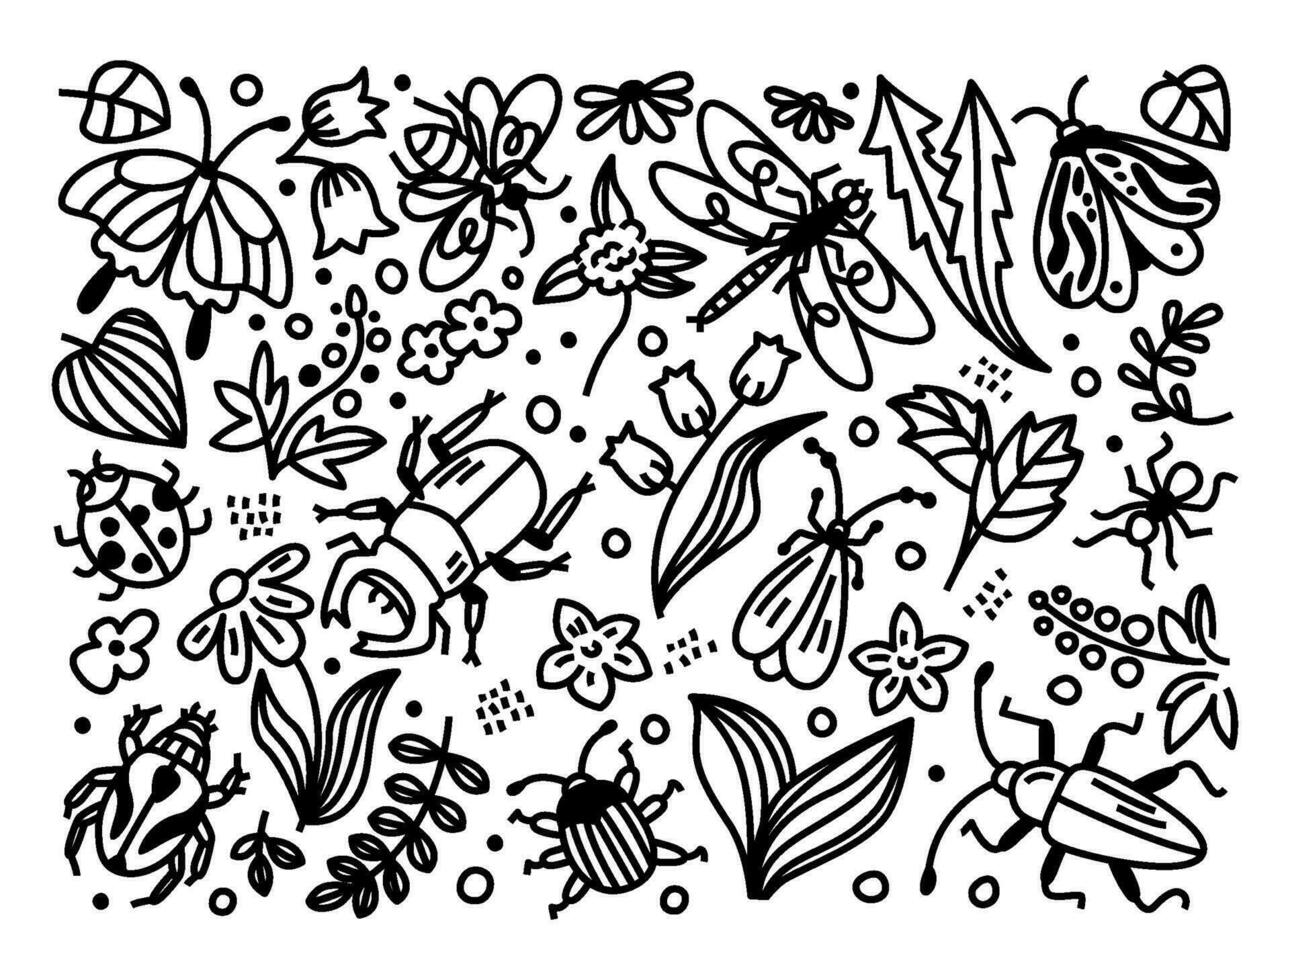 impostato di cartone animato scarabocchi con insetti, fiori e le foglie. vettore